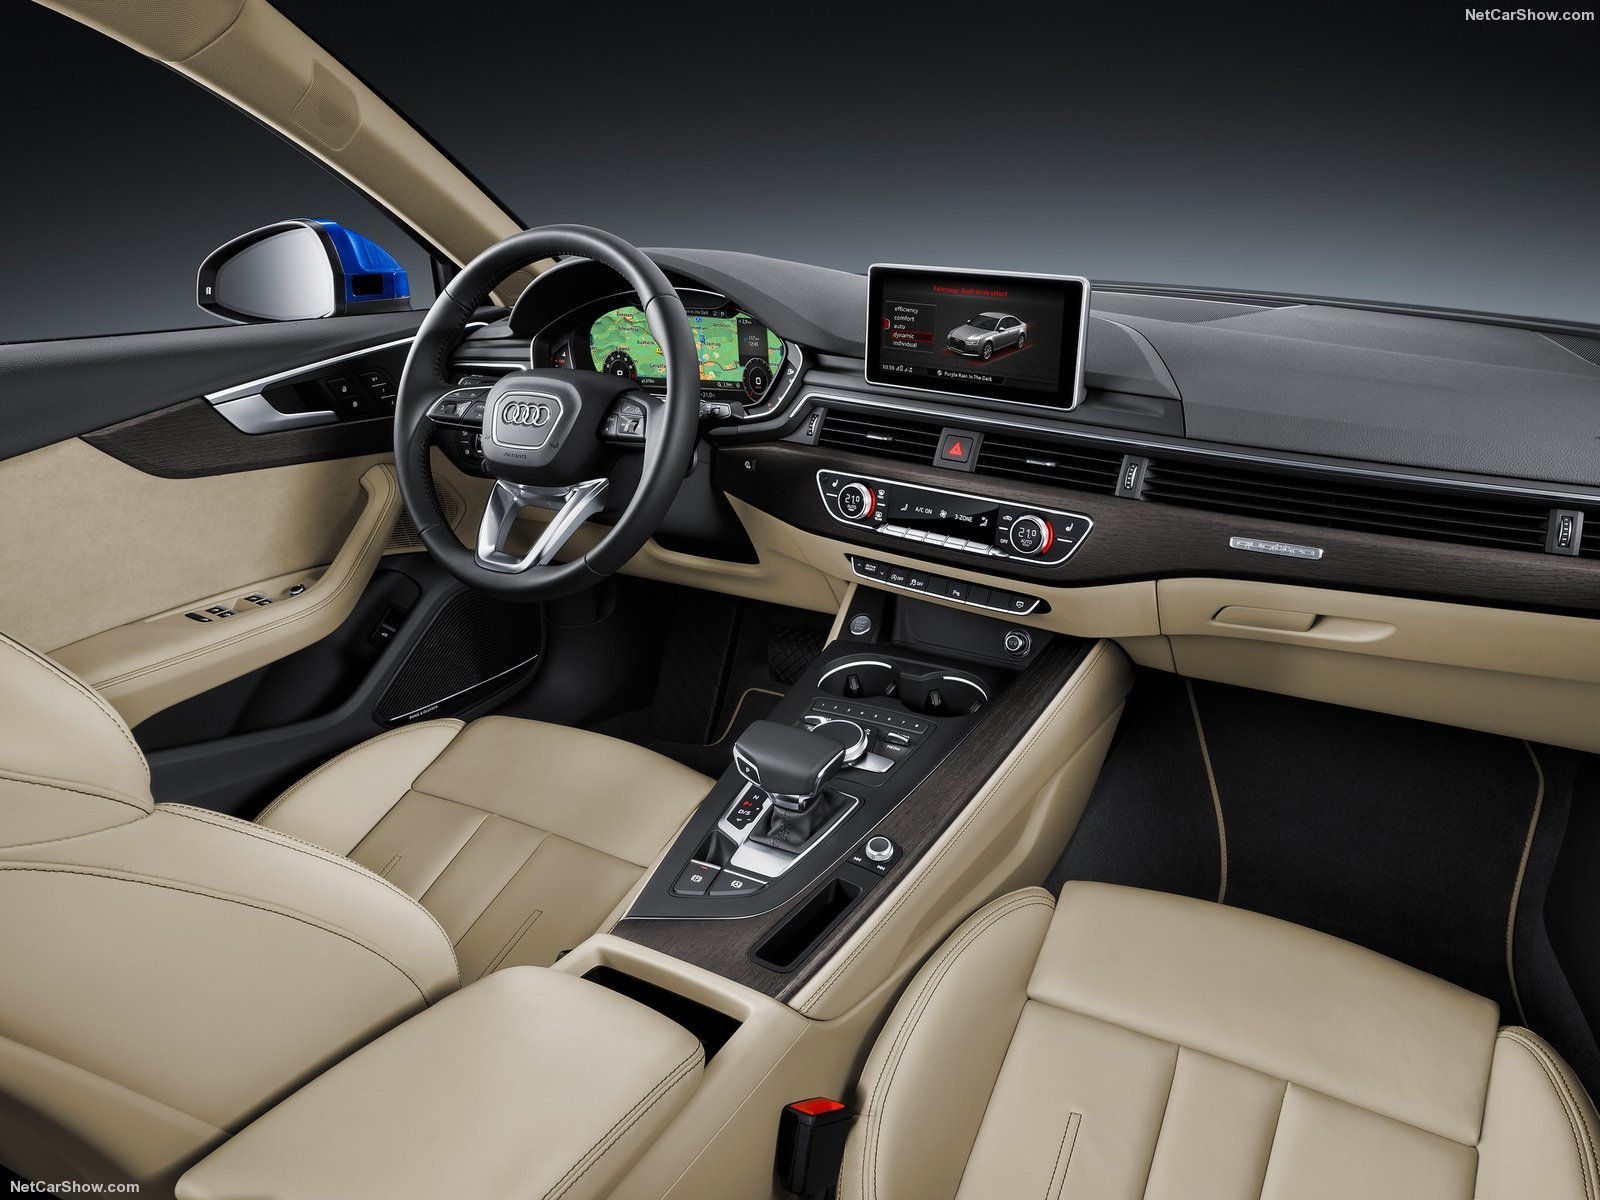 2016, Audi a4, Sedan, Cars Wallpaper